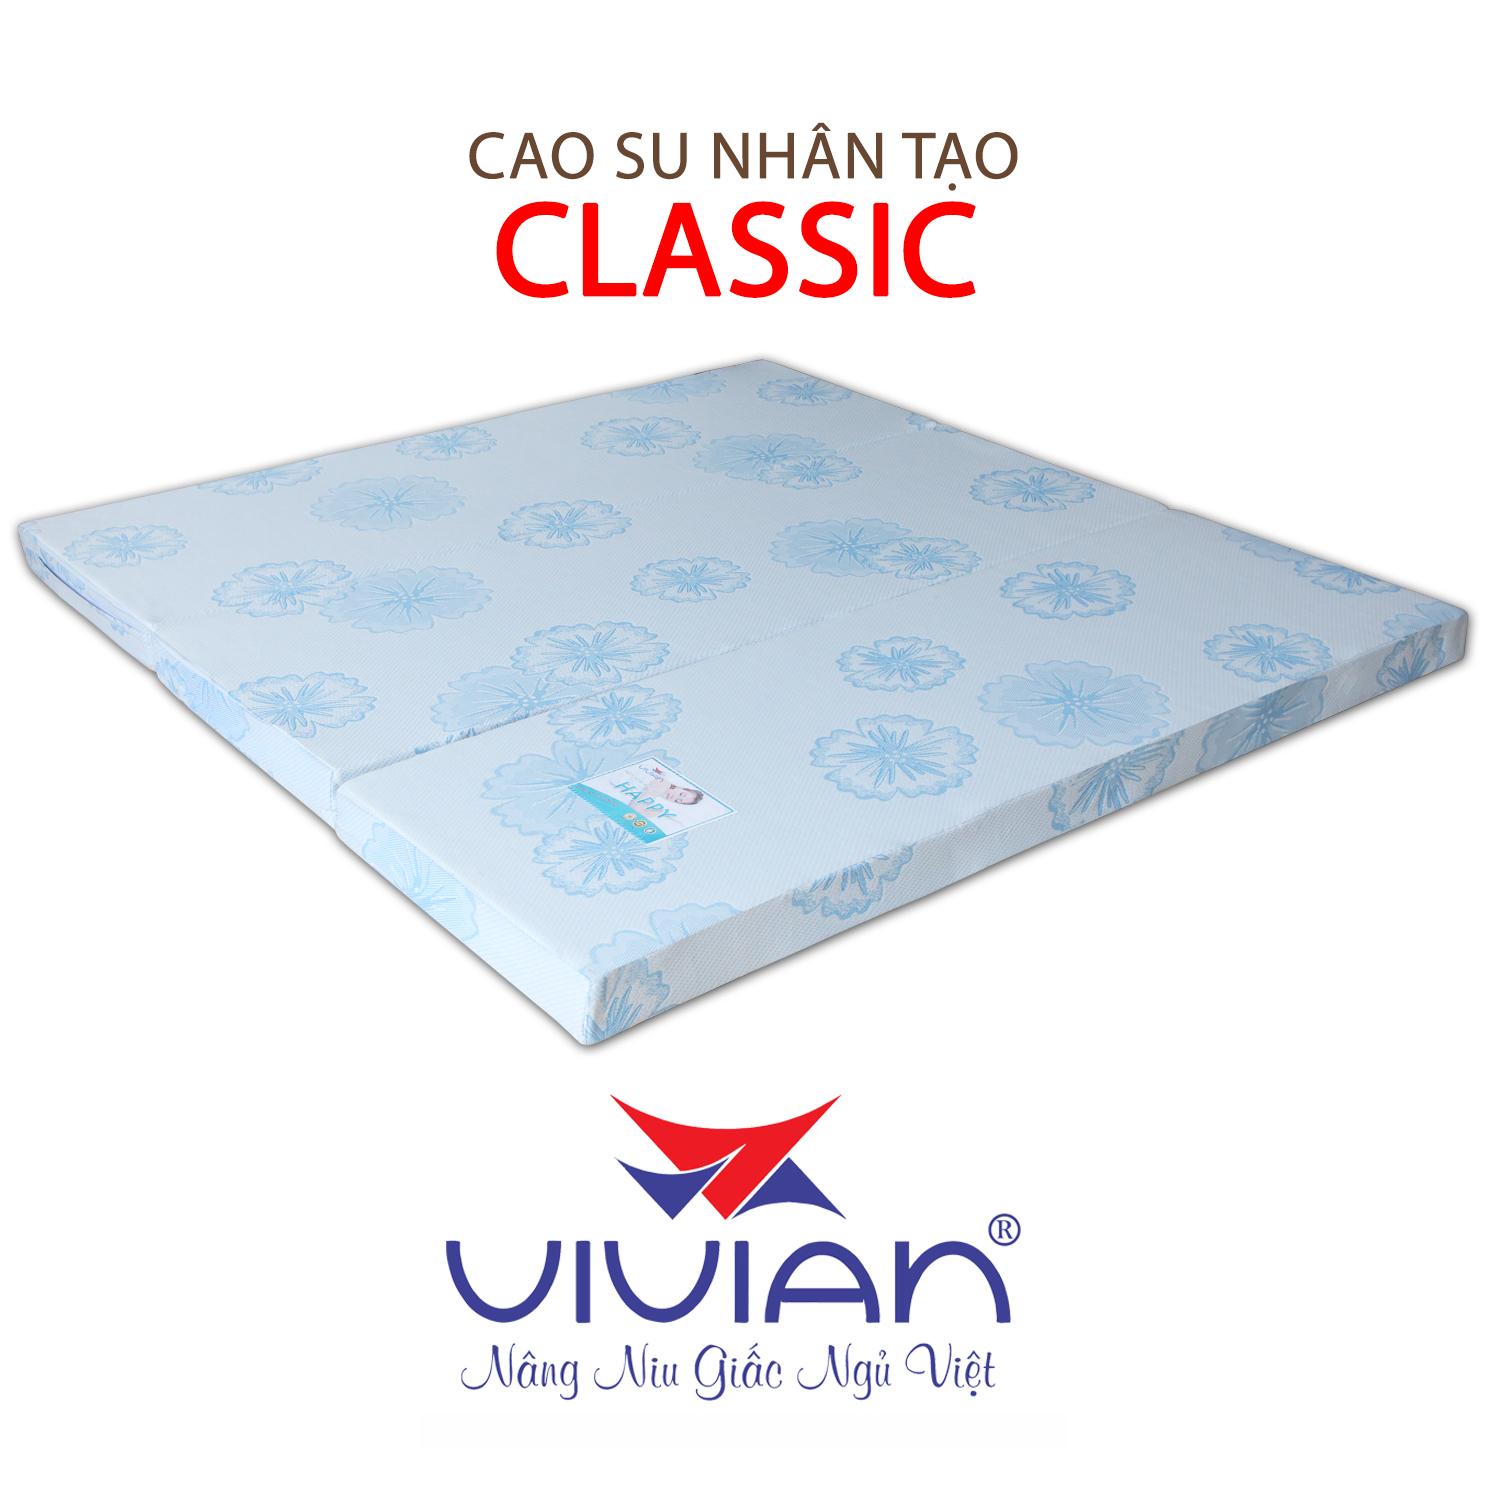 NỆM CAO SU NHÂN TẠO CLASSIC GẤP 3 VIVIAN 180X200X10